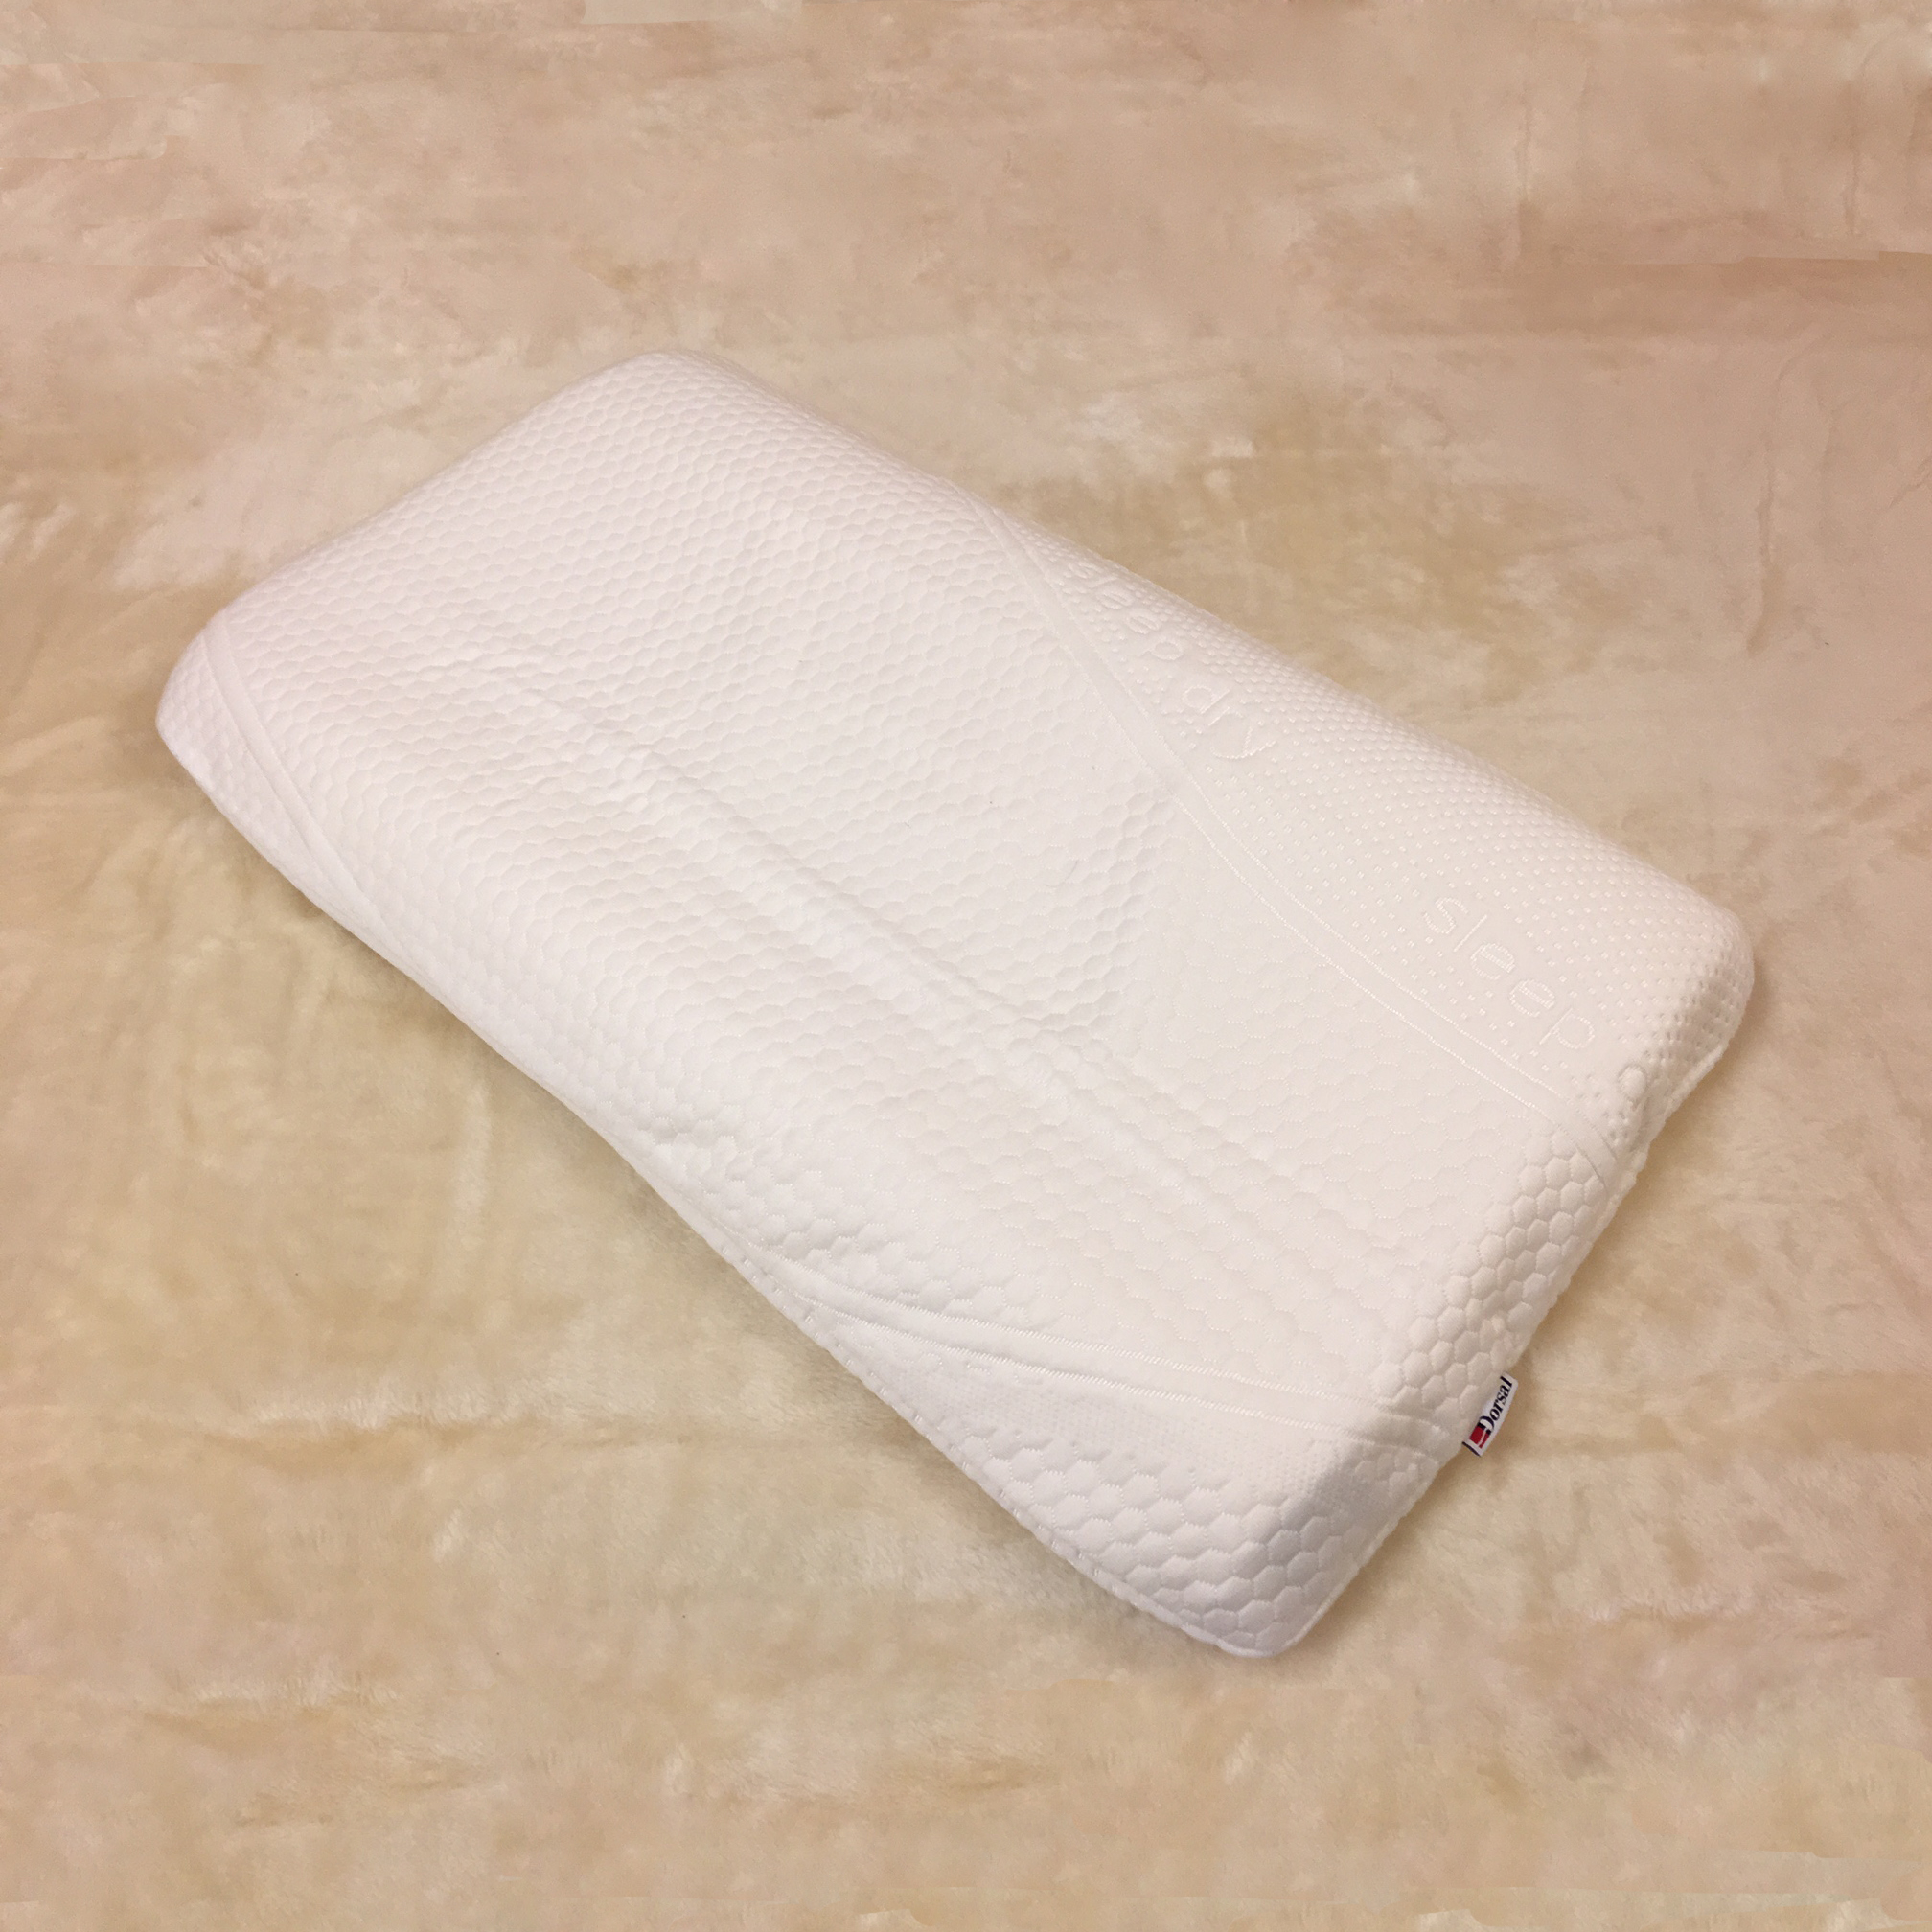  ひまわりオイル枕(6-8cm厚) カバー付き